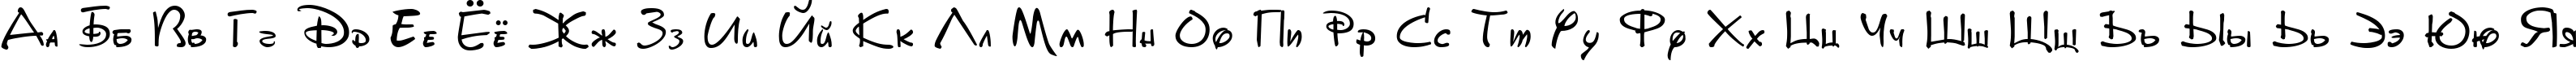 Пример написания русского алфавита шрифтом DisneyPark